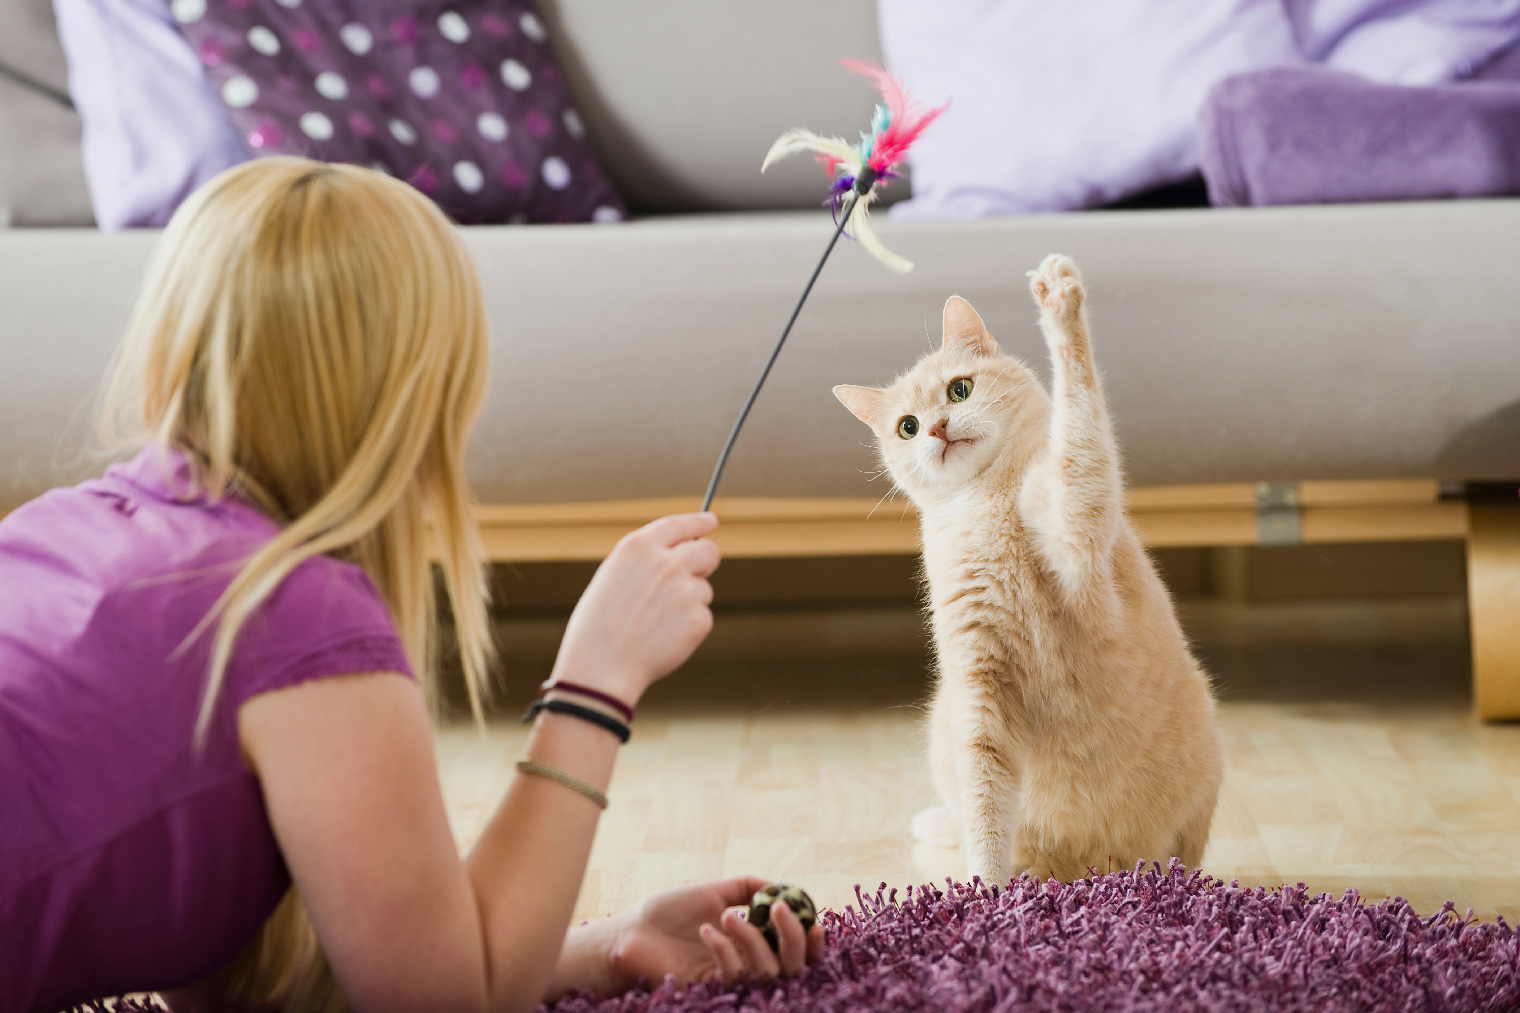 Кошка может кусать вас случайно, если вы держите игрушку прямо в руке. Для того чтобы держать разыгравшуюся кошку на расстоянии, существуют игрушки-удочки. Фото: Dora Zett / Shutterstock